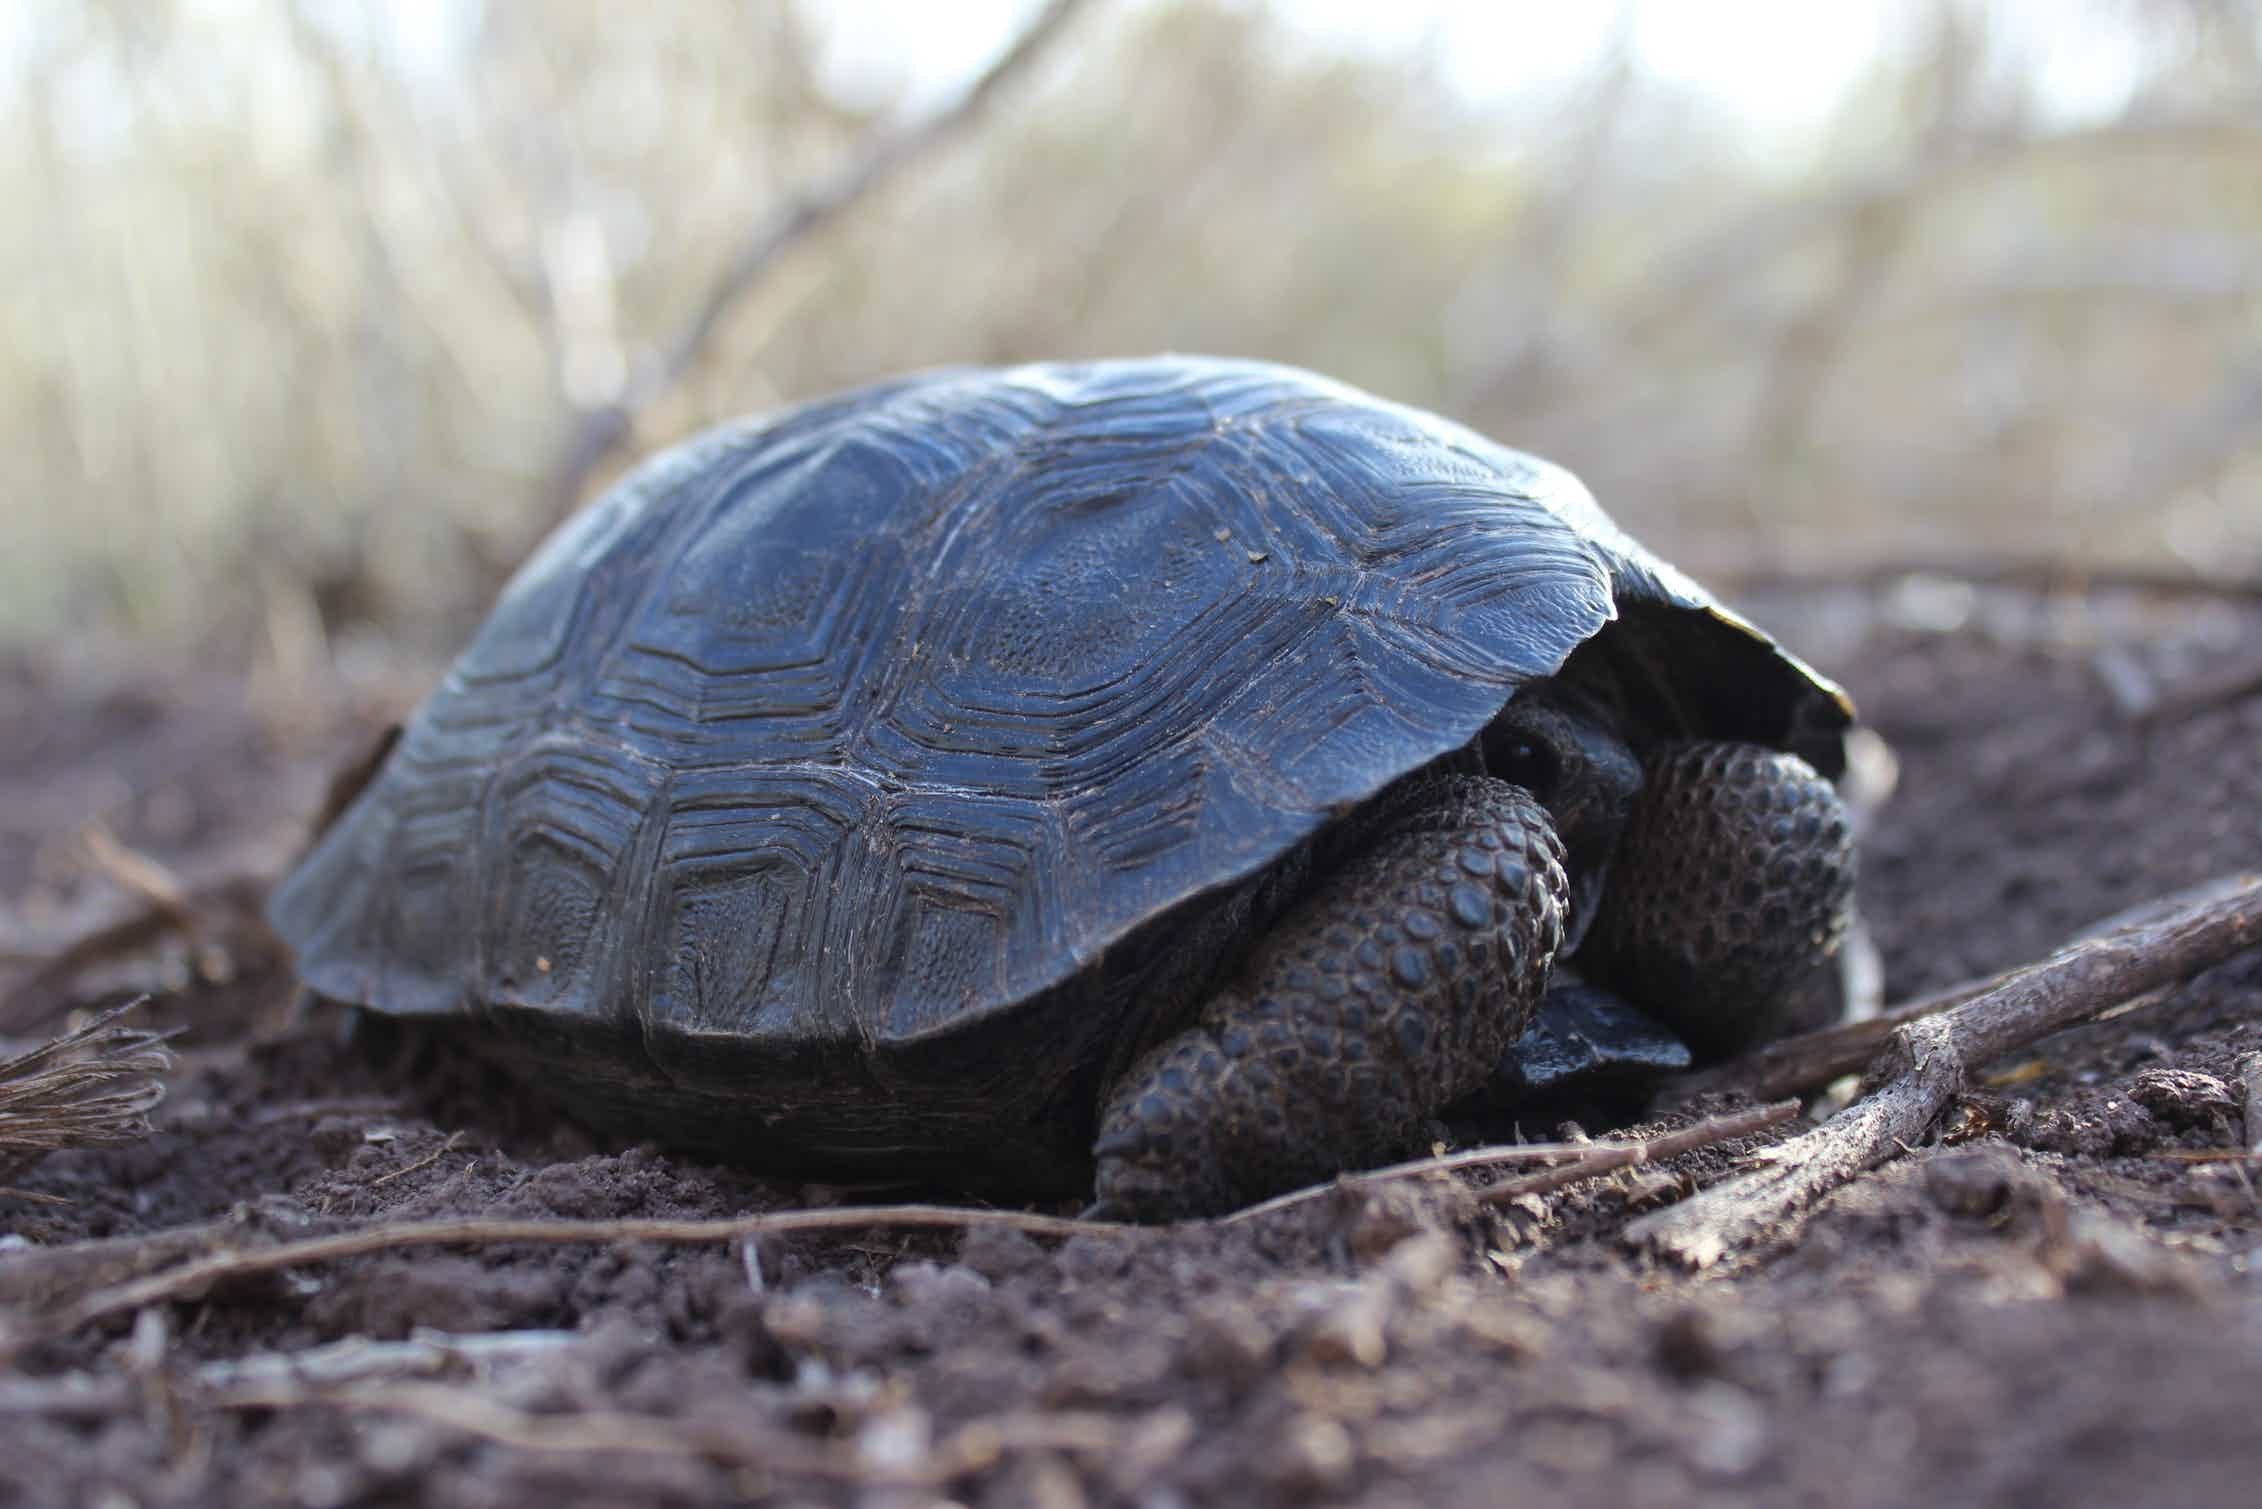 Слоновая черепаха среда обитания. Галапагосская черепаха. Дермохелис черепаха. Галапагосская слоновая черепаха. Галапагосские острова черепахи.